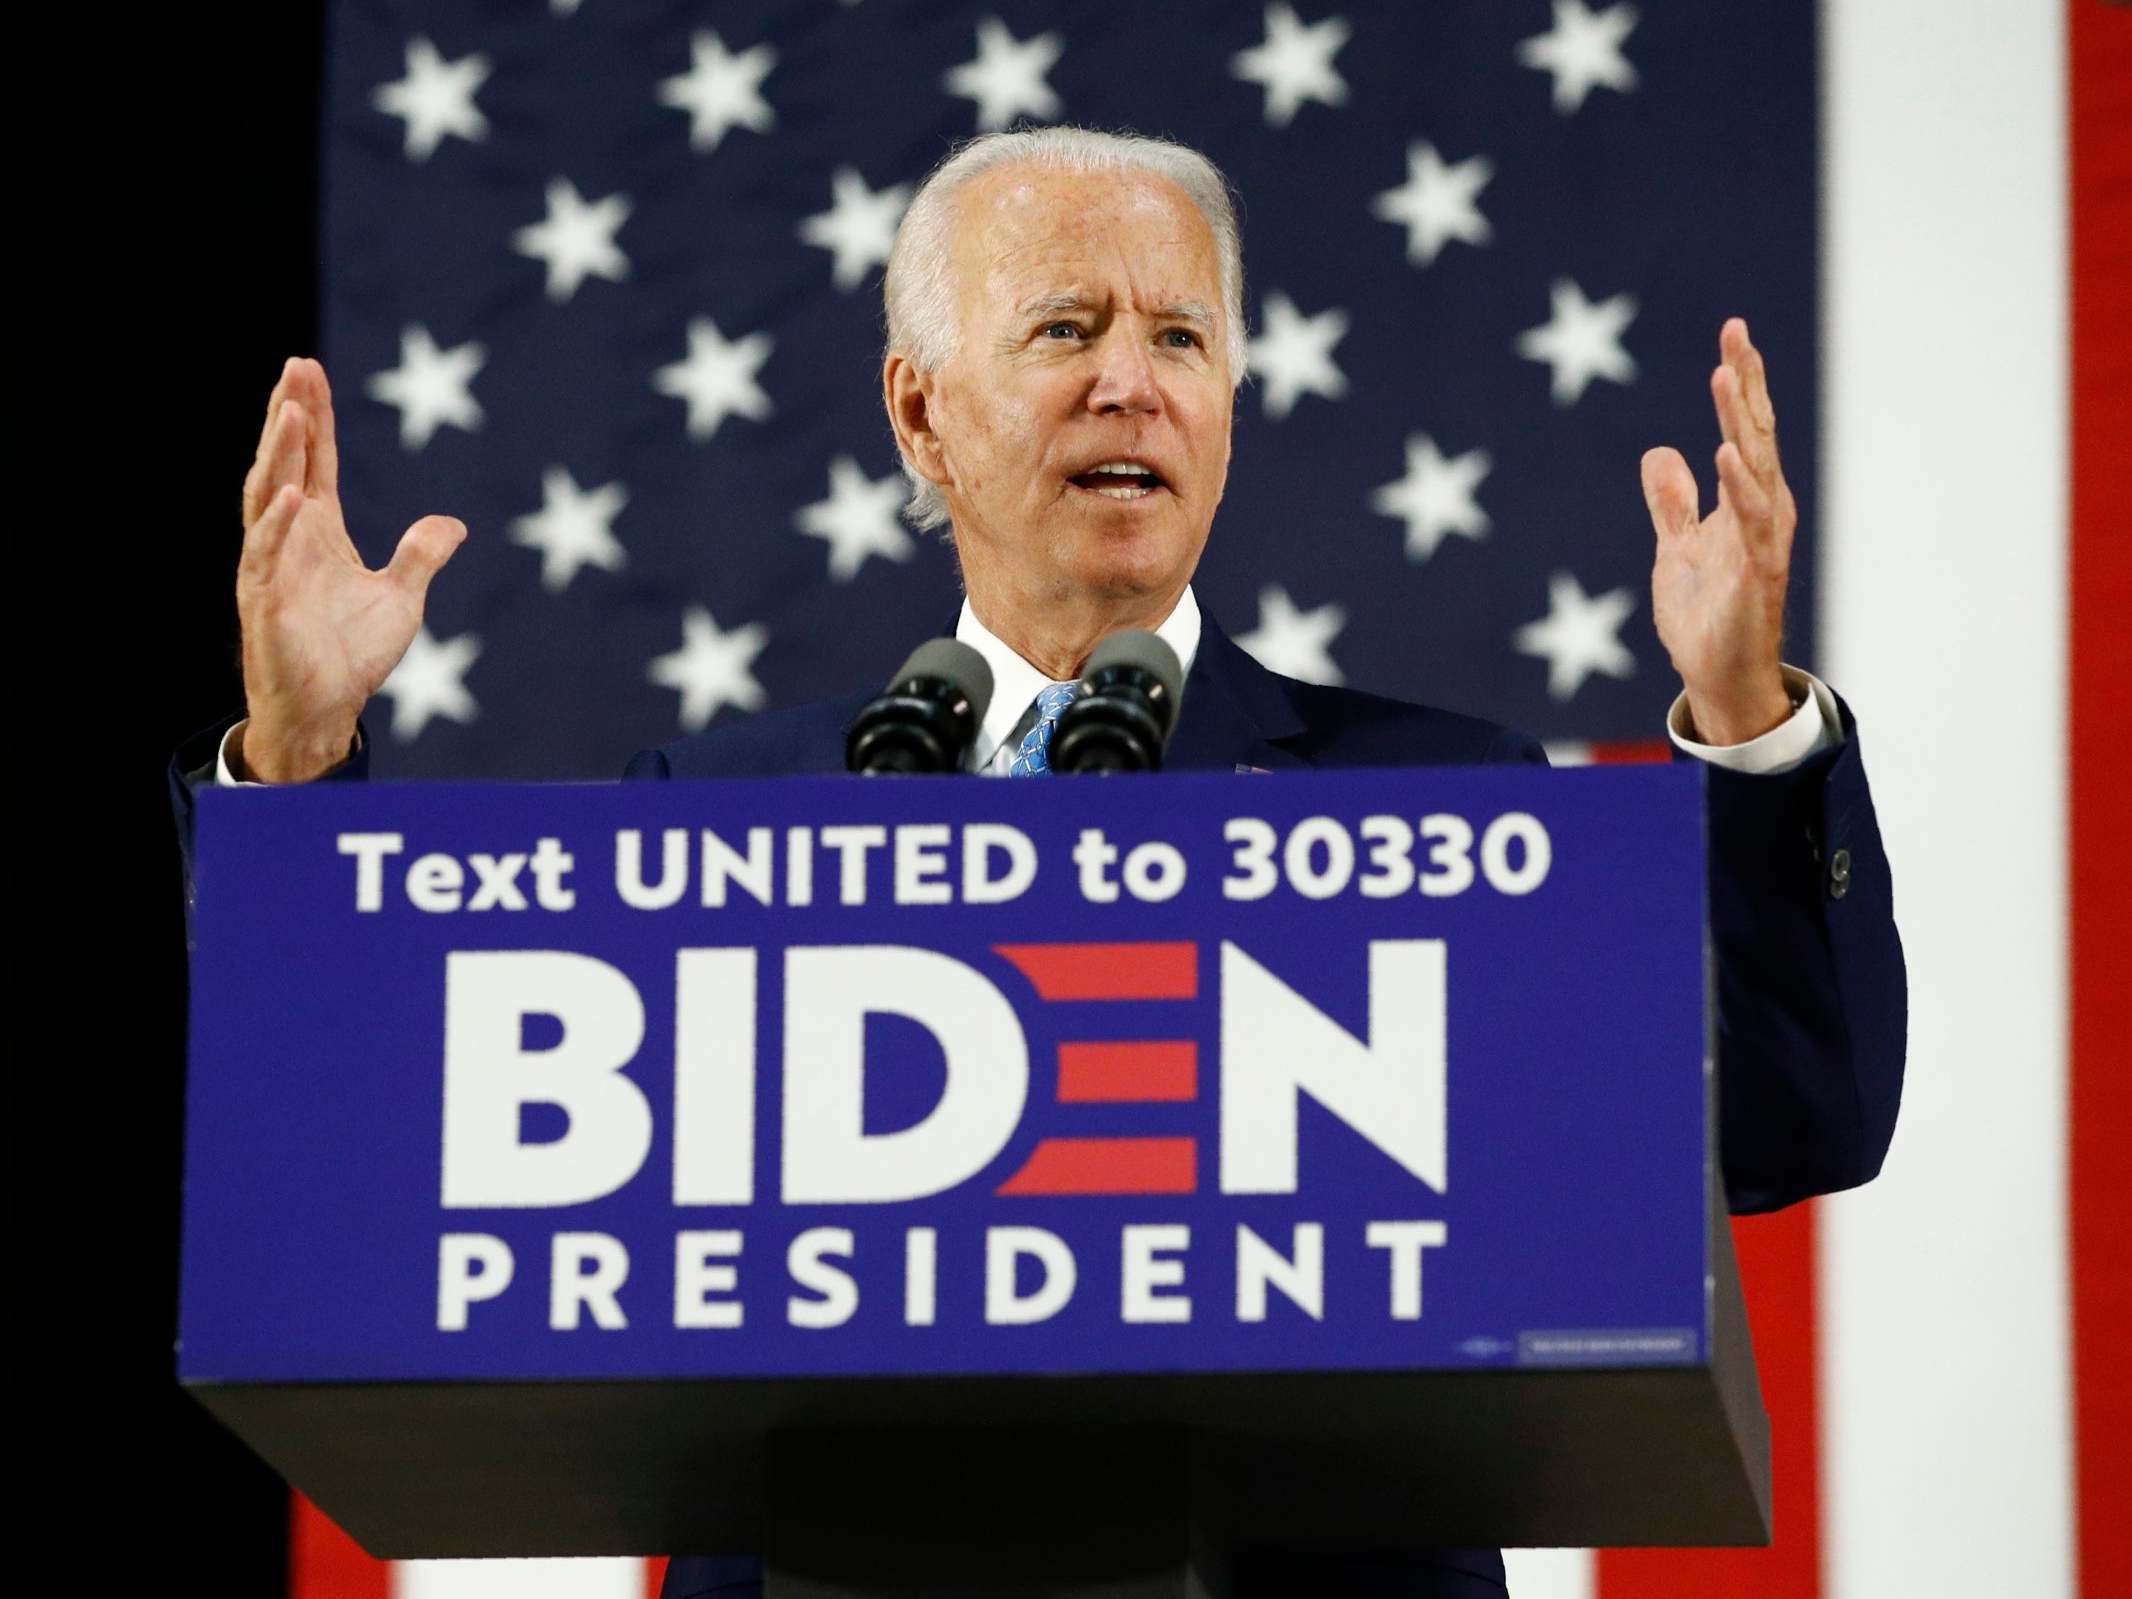 Mr Biden is the presumptive Democratic nominee